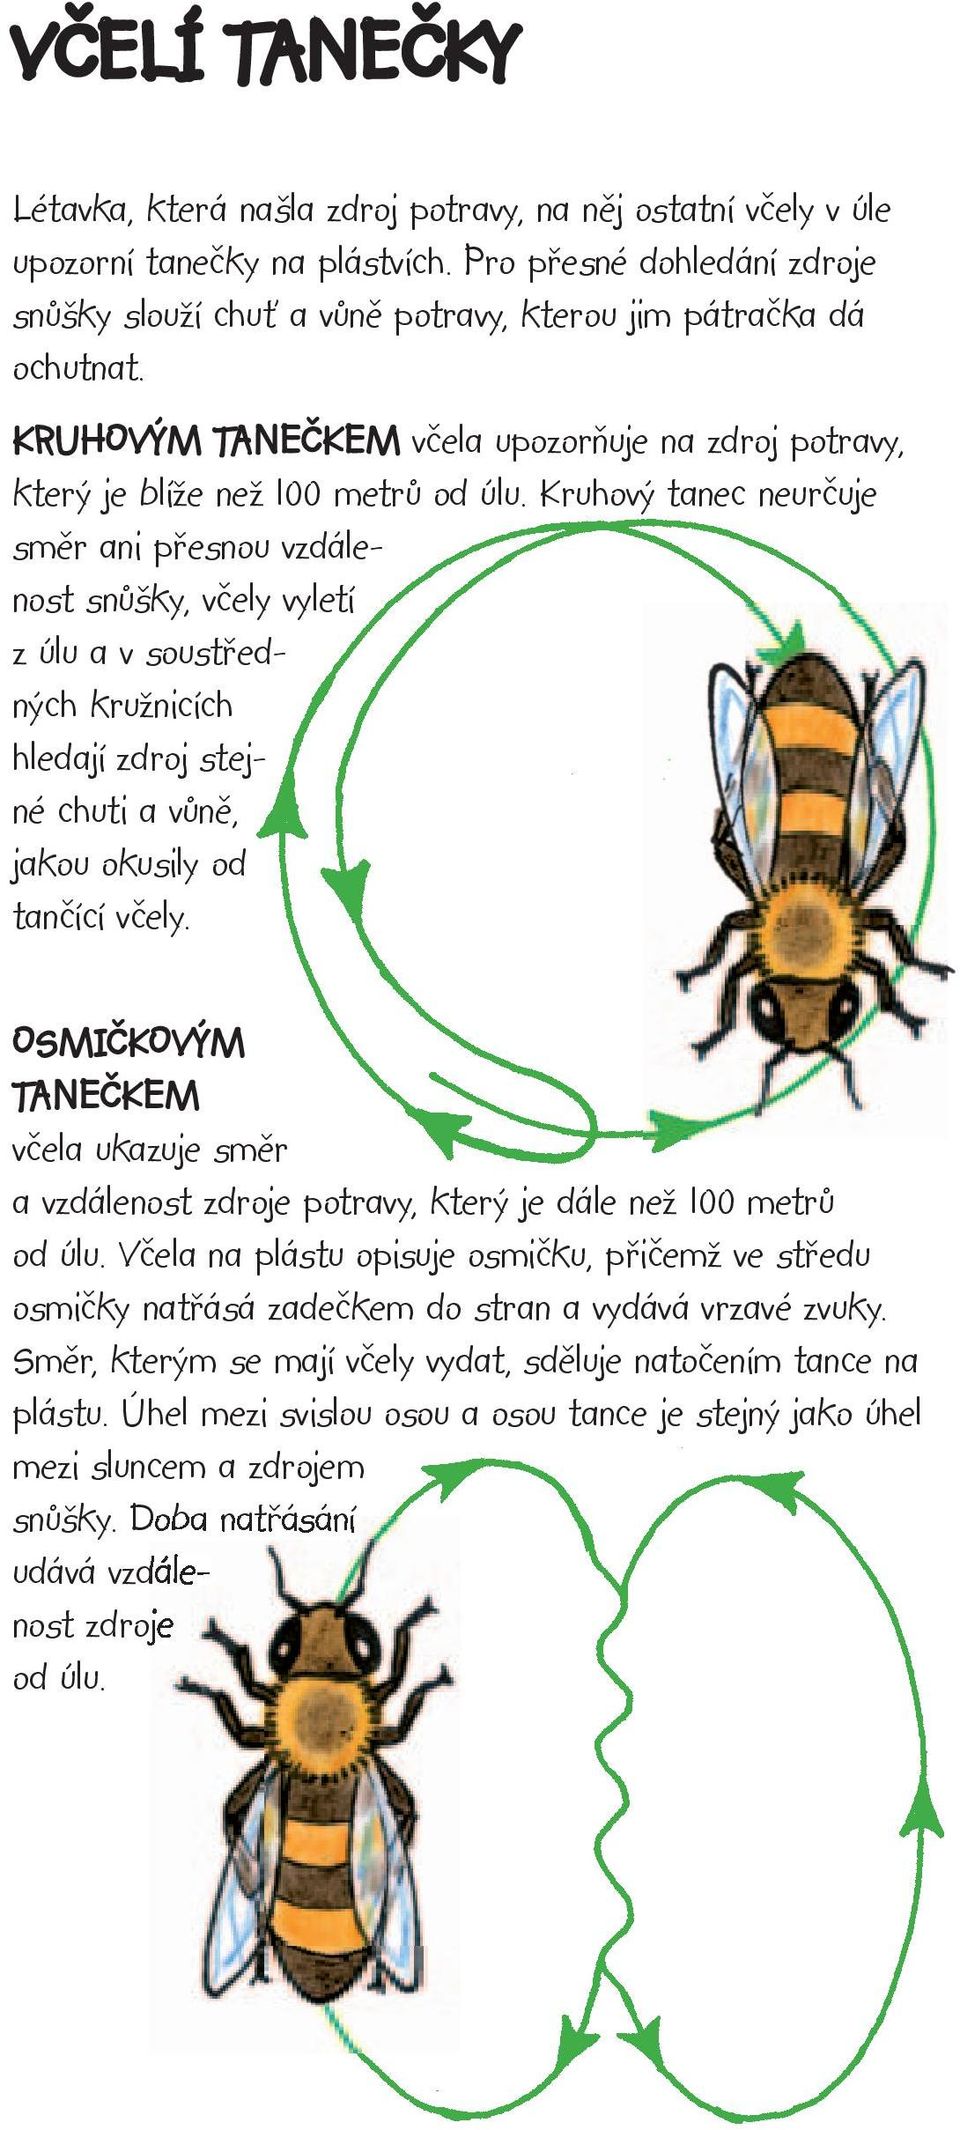 Kruhový tanec neurčuje směr ani přesnou vzdálenost snůšky, včely vyletí z úlu a v soustředných kružnicích hledají zdroj stejné chuti a vůně, jakou okusily od tančící včely.